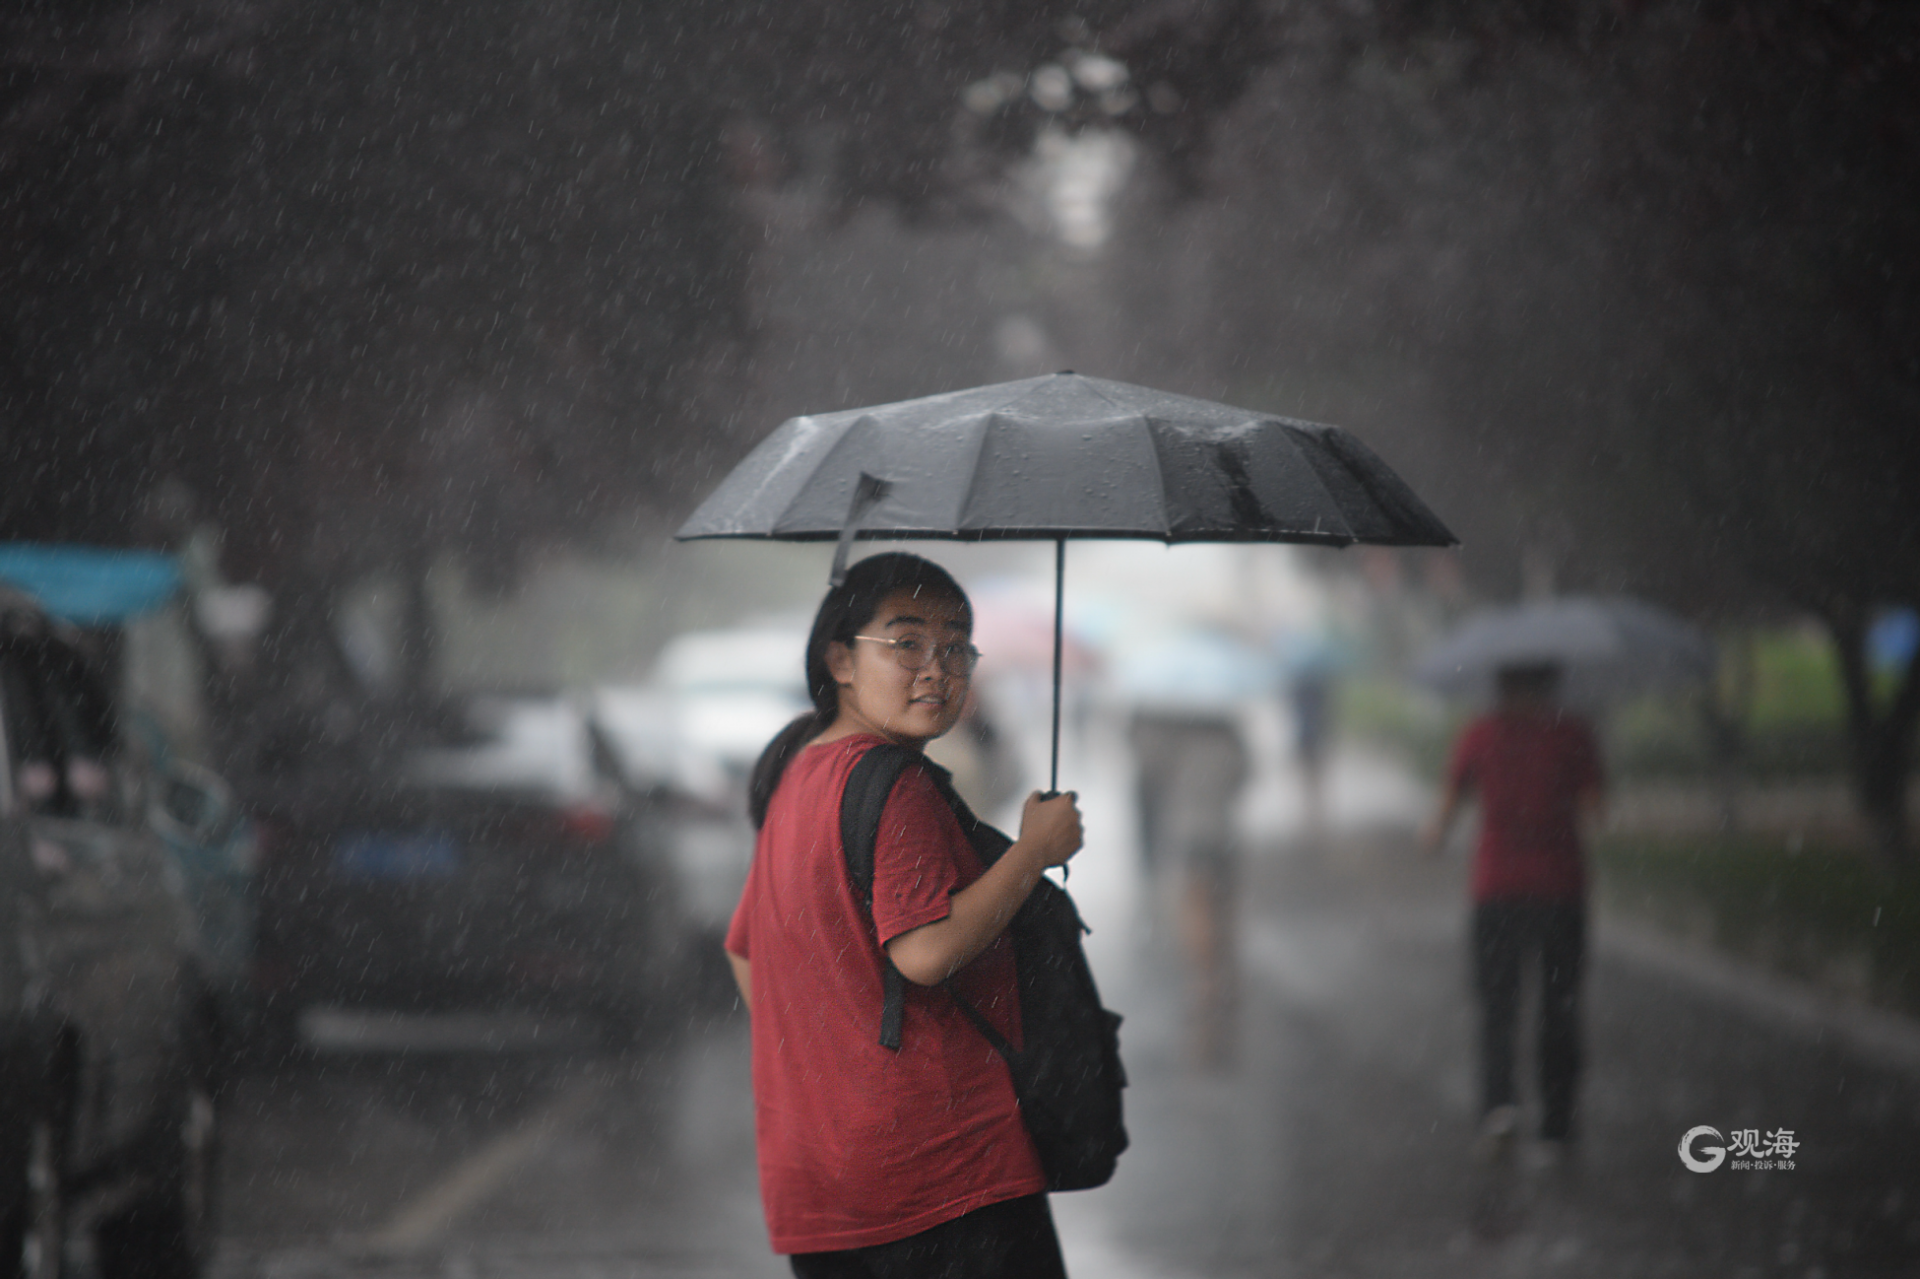 市区暴雨如注,强降雨导致道路积水,路上的车辆缓慢行驶,行人撑伞出行